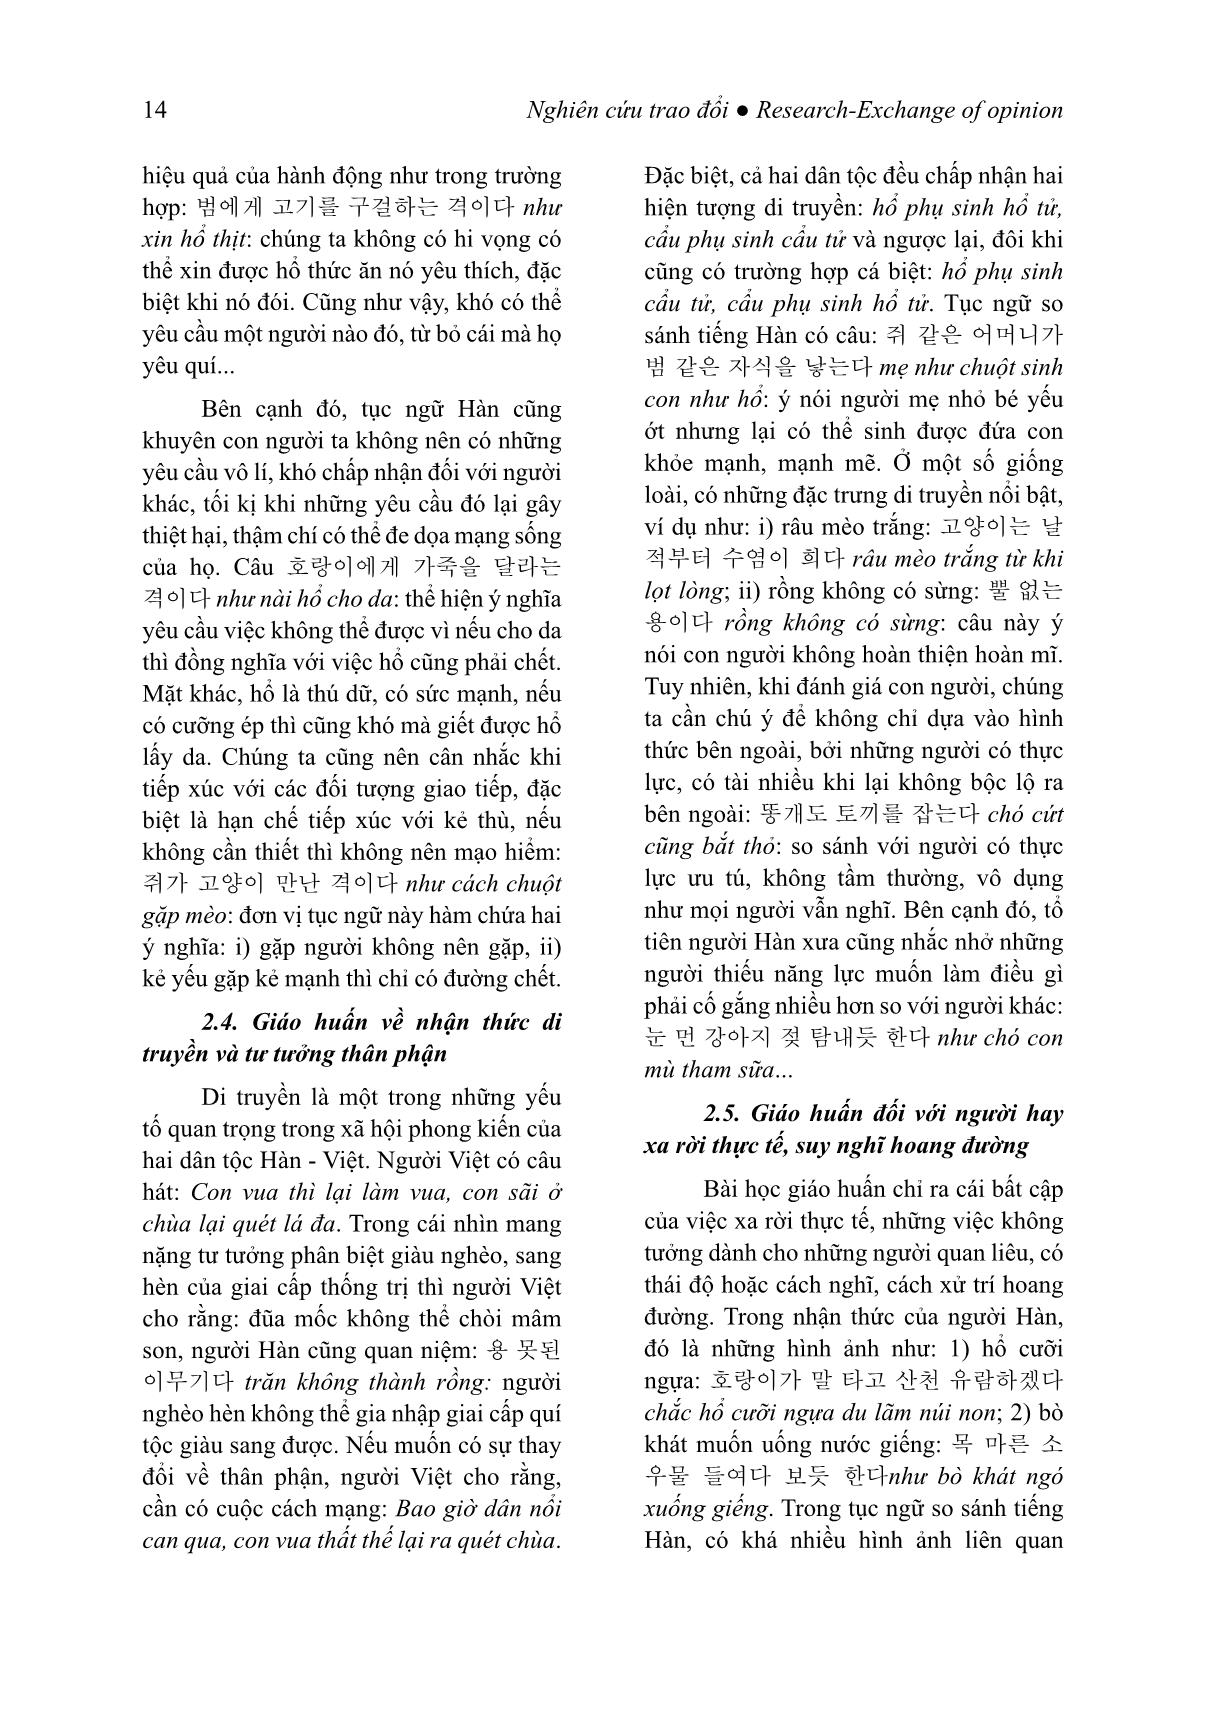 Giá trị giáo huấn của tục ngữ so sánh tiếng Hàn (Trọng tâm là các đơn vị có yếu tố chỉ con giáp) trang 5